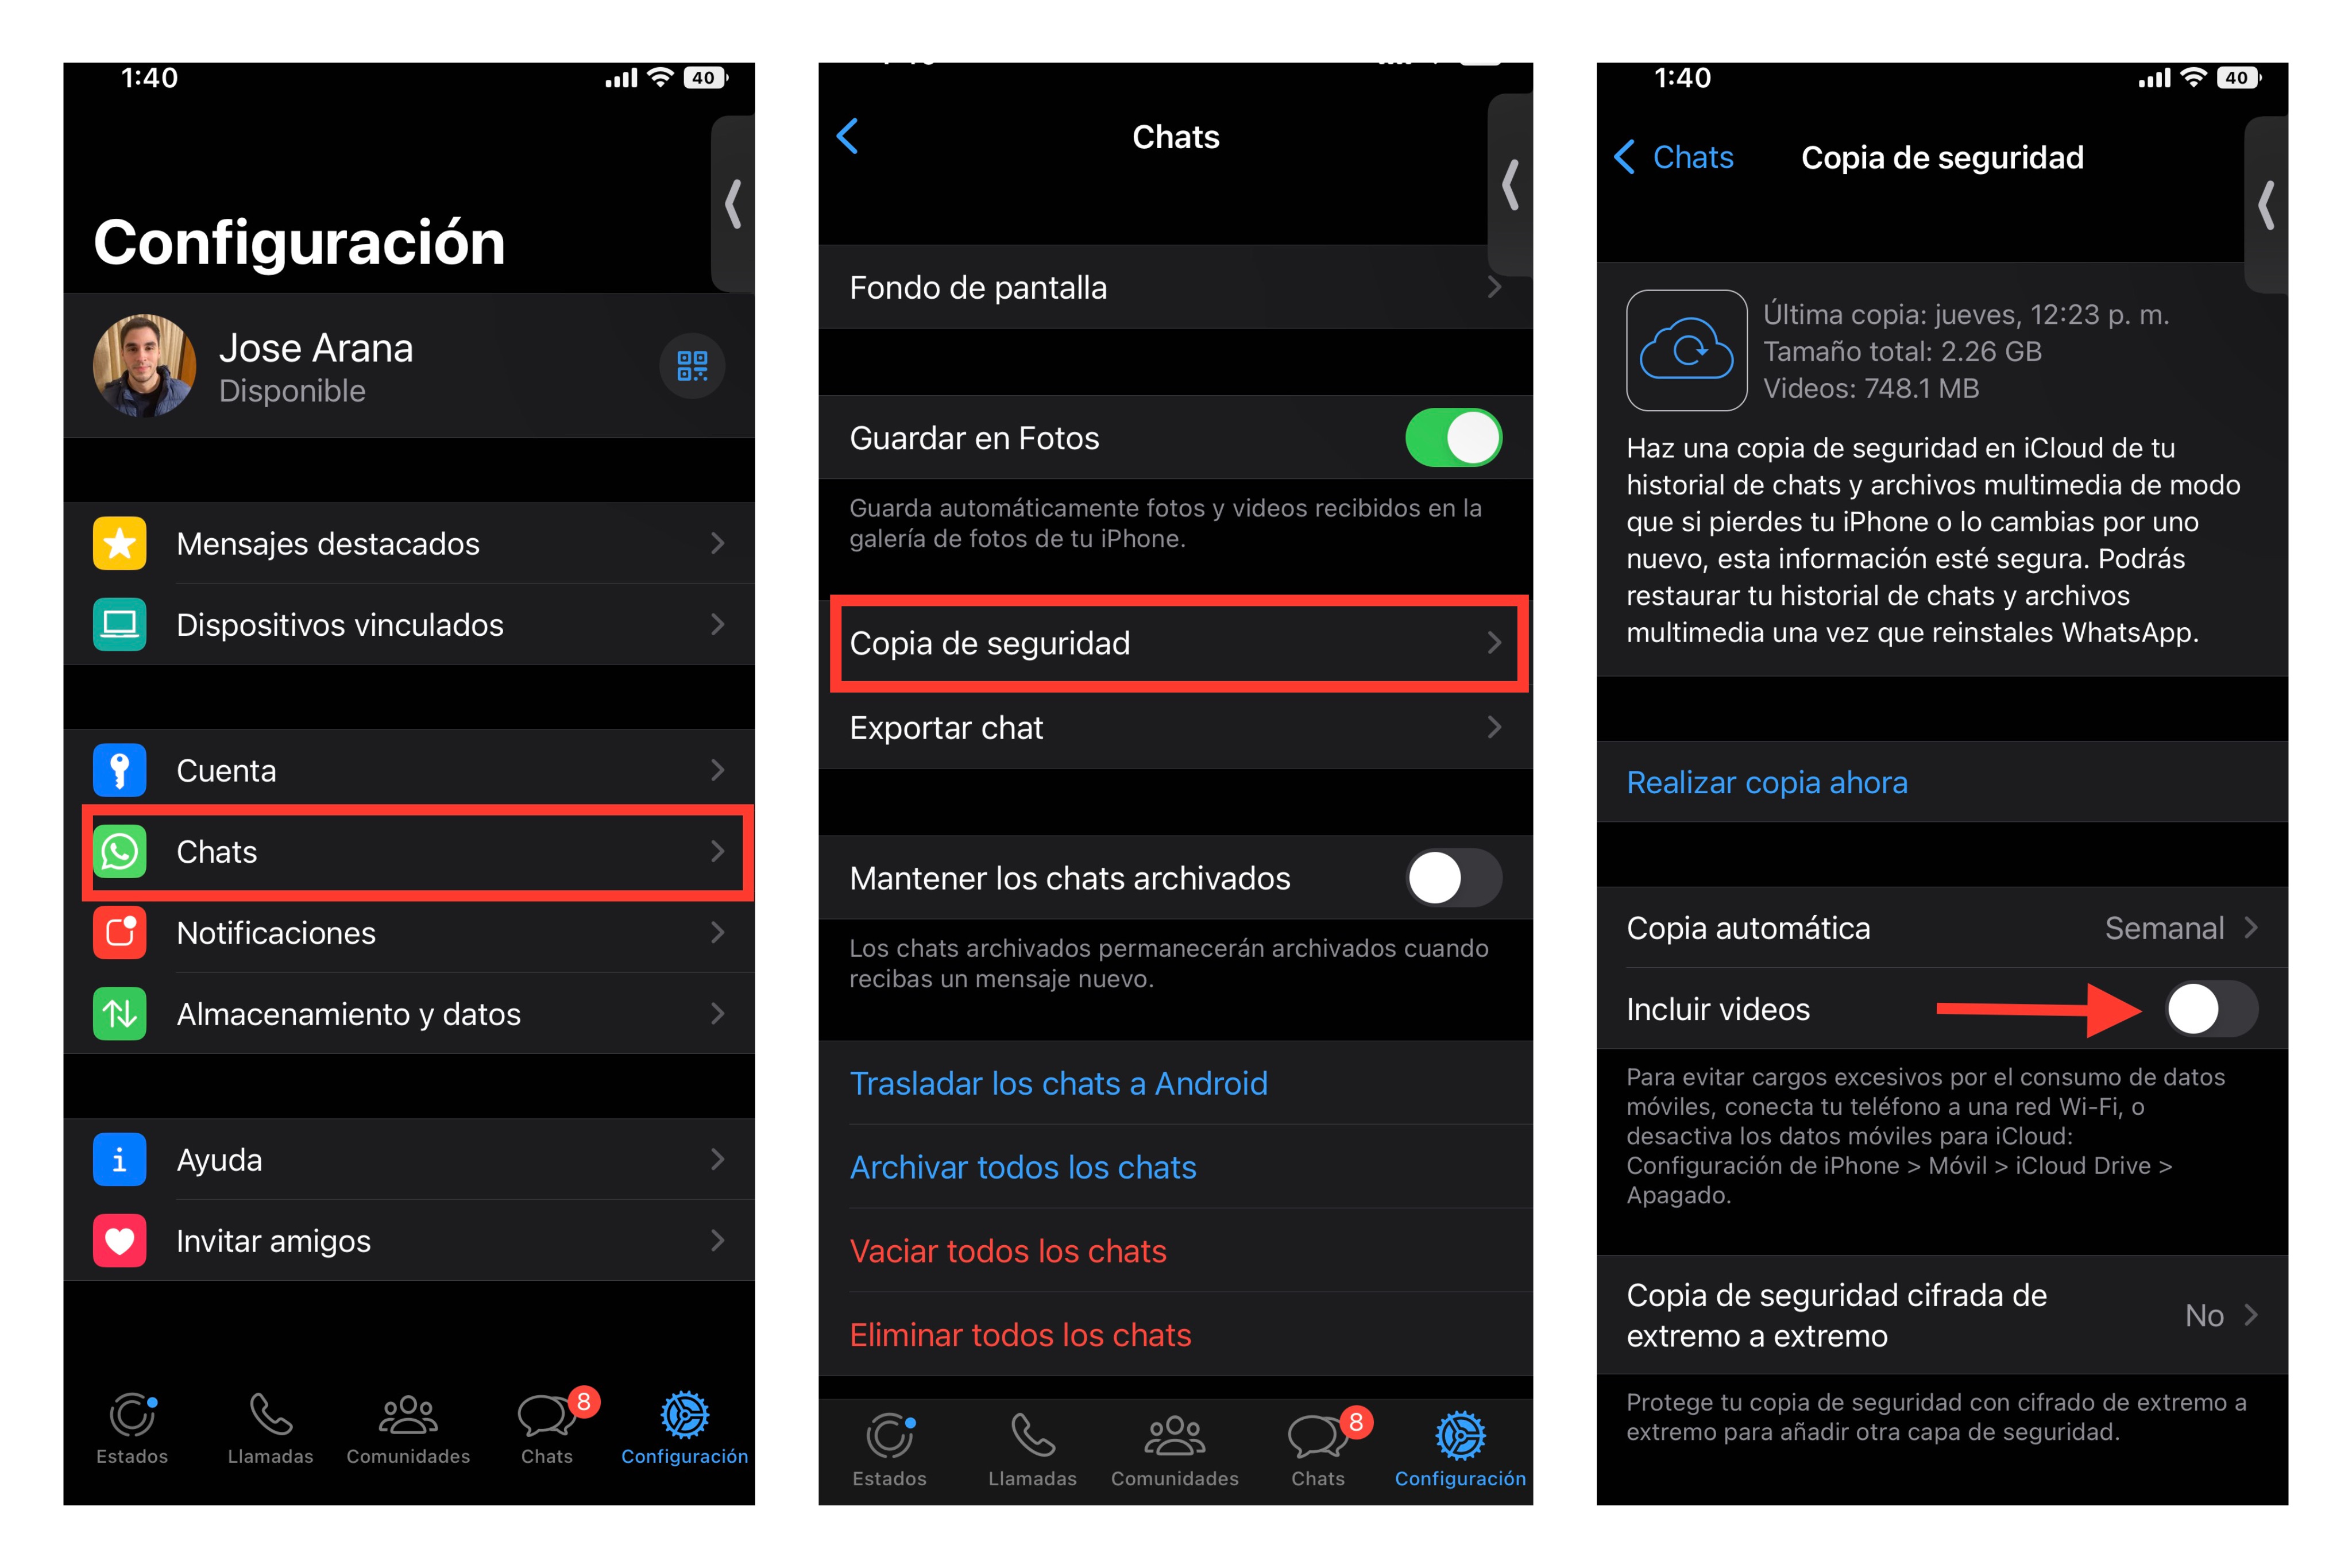 Cómo no ocupar mucho espacio en el celular con la copia de seguridad de WhatsApp. (foto: iPhone/Composición/Jose Arana)